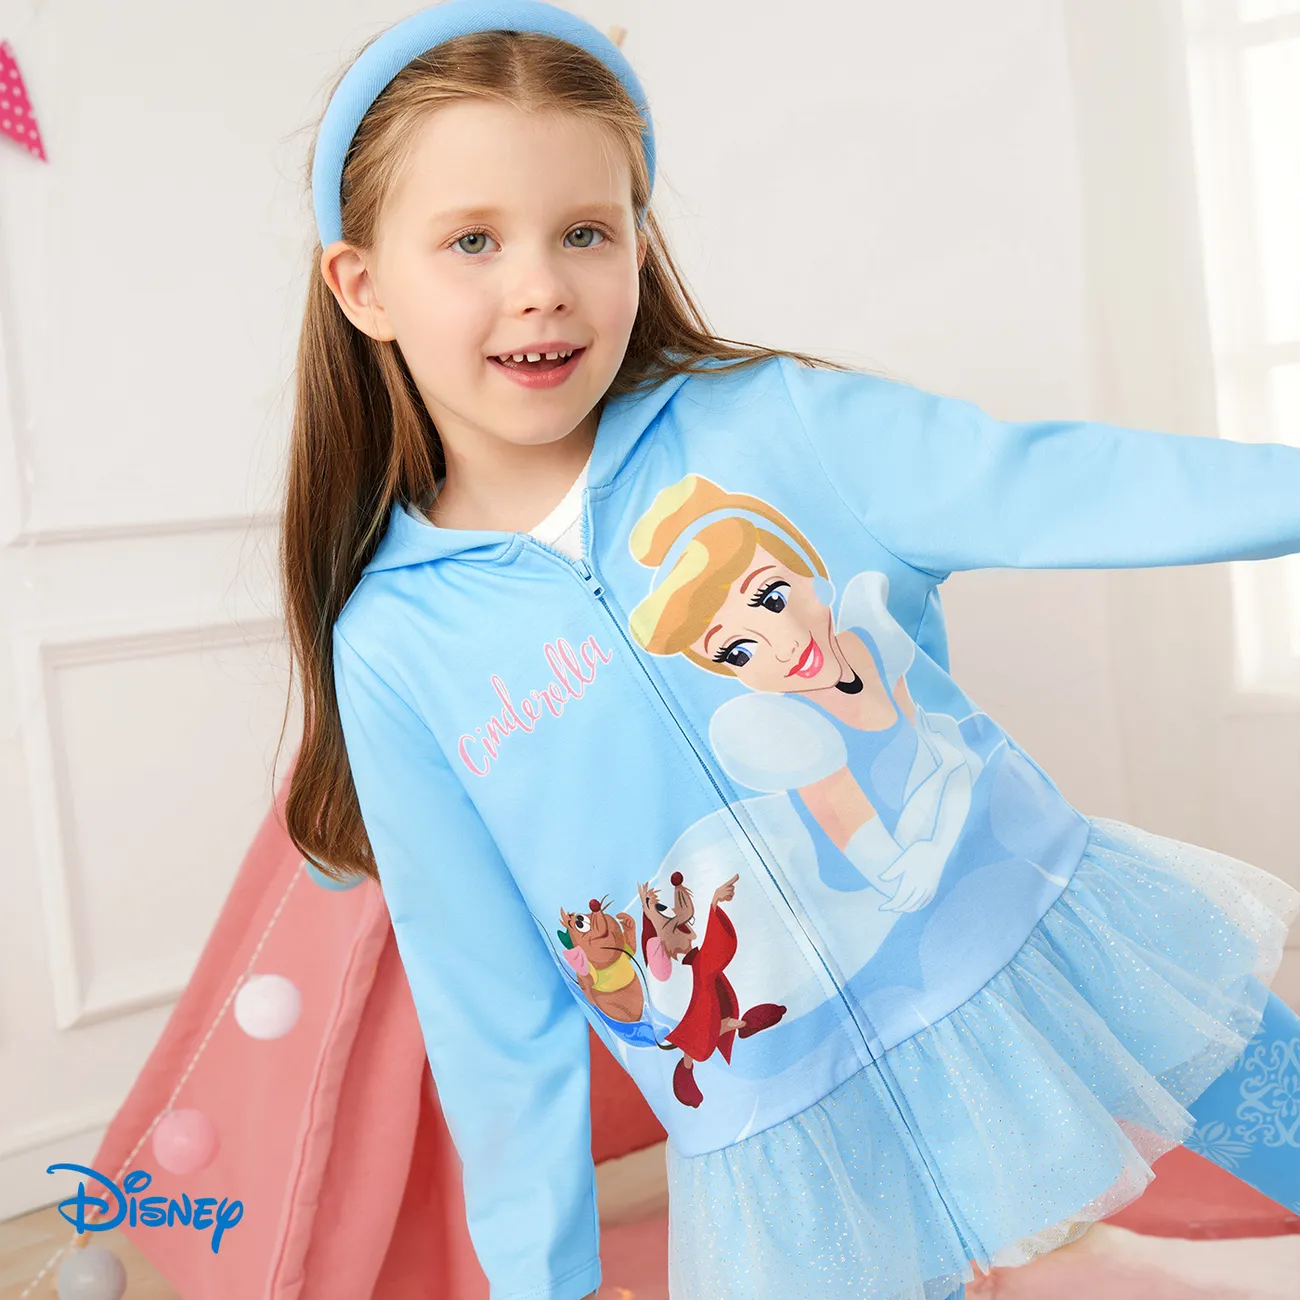 Disney Princess Criança Menina Com capuz Bonito Blusões e casacos  big image 1